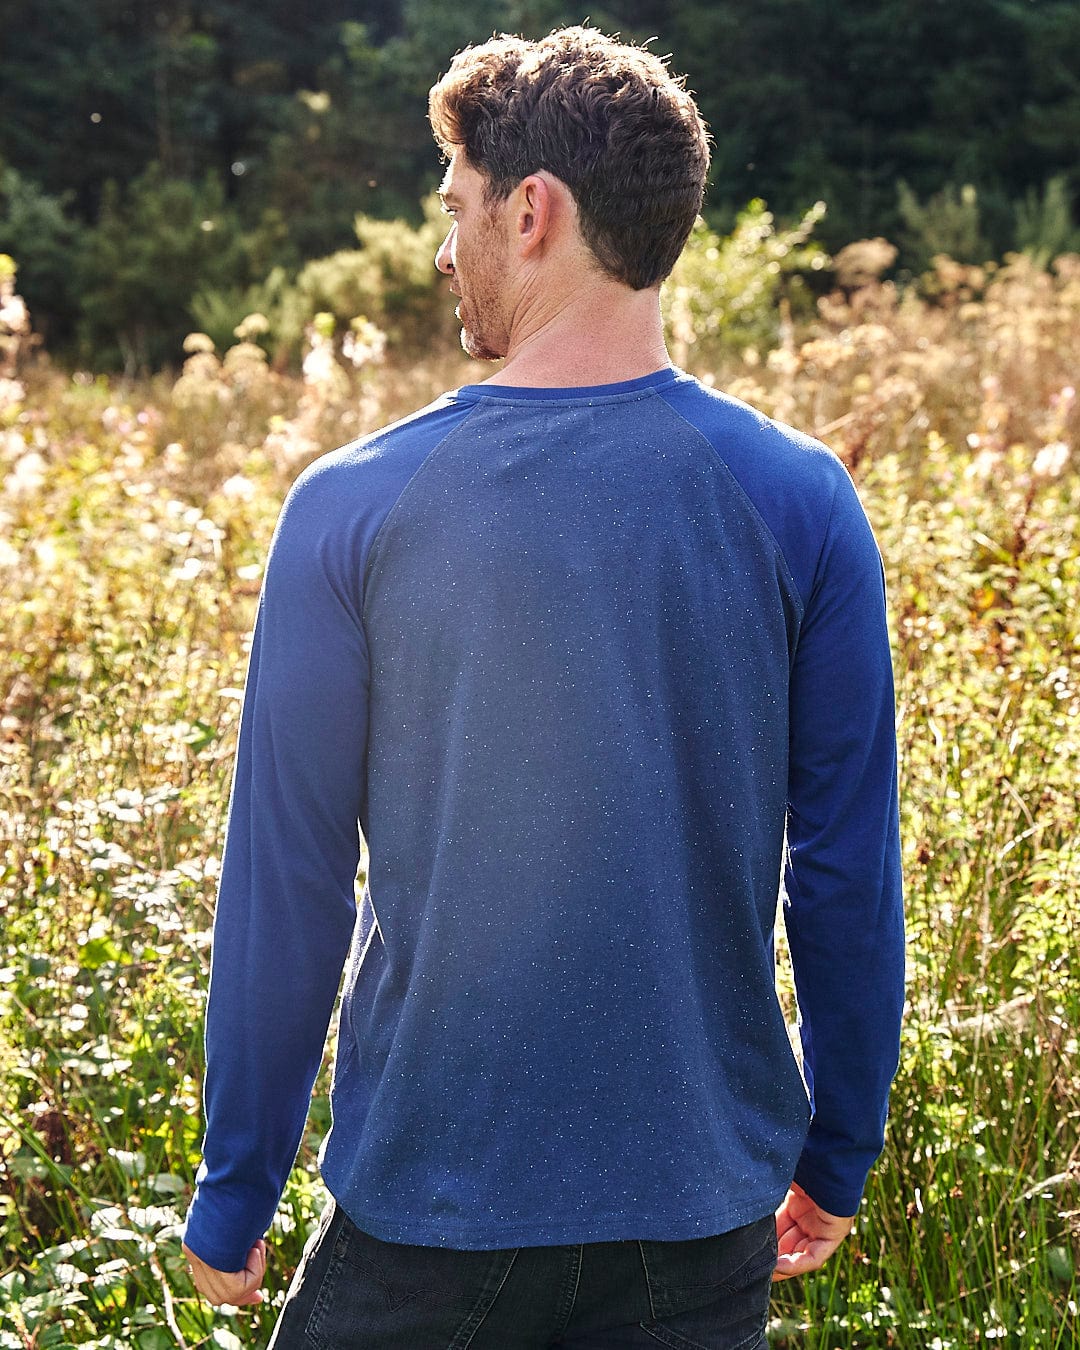 A man standing in a field wearing a blue long sleeved Saltrock Home Run Nep - Men's Raglan Long Sleeve T-Shirt.